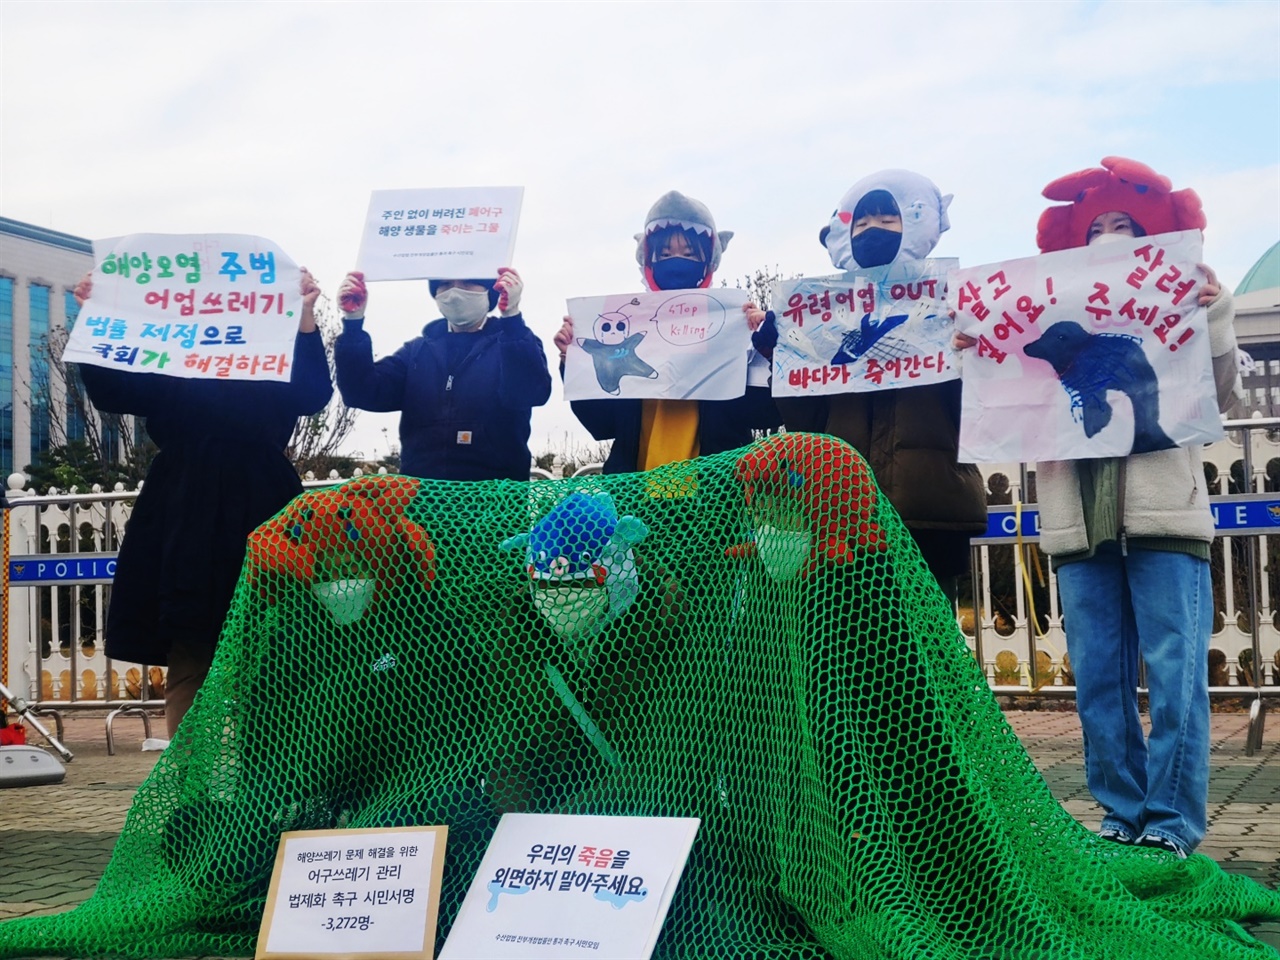 11월 23일(화) 수산업법전부개정법률안 통과를 촉구하기 위해 조성된 시민 모임이 국회 앞에서 기자회견을 진행했다.